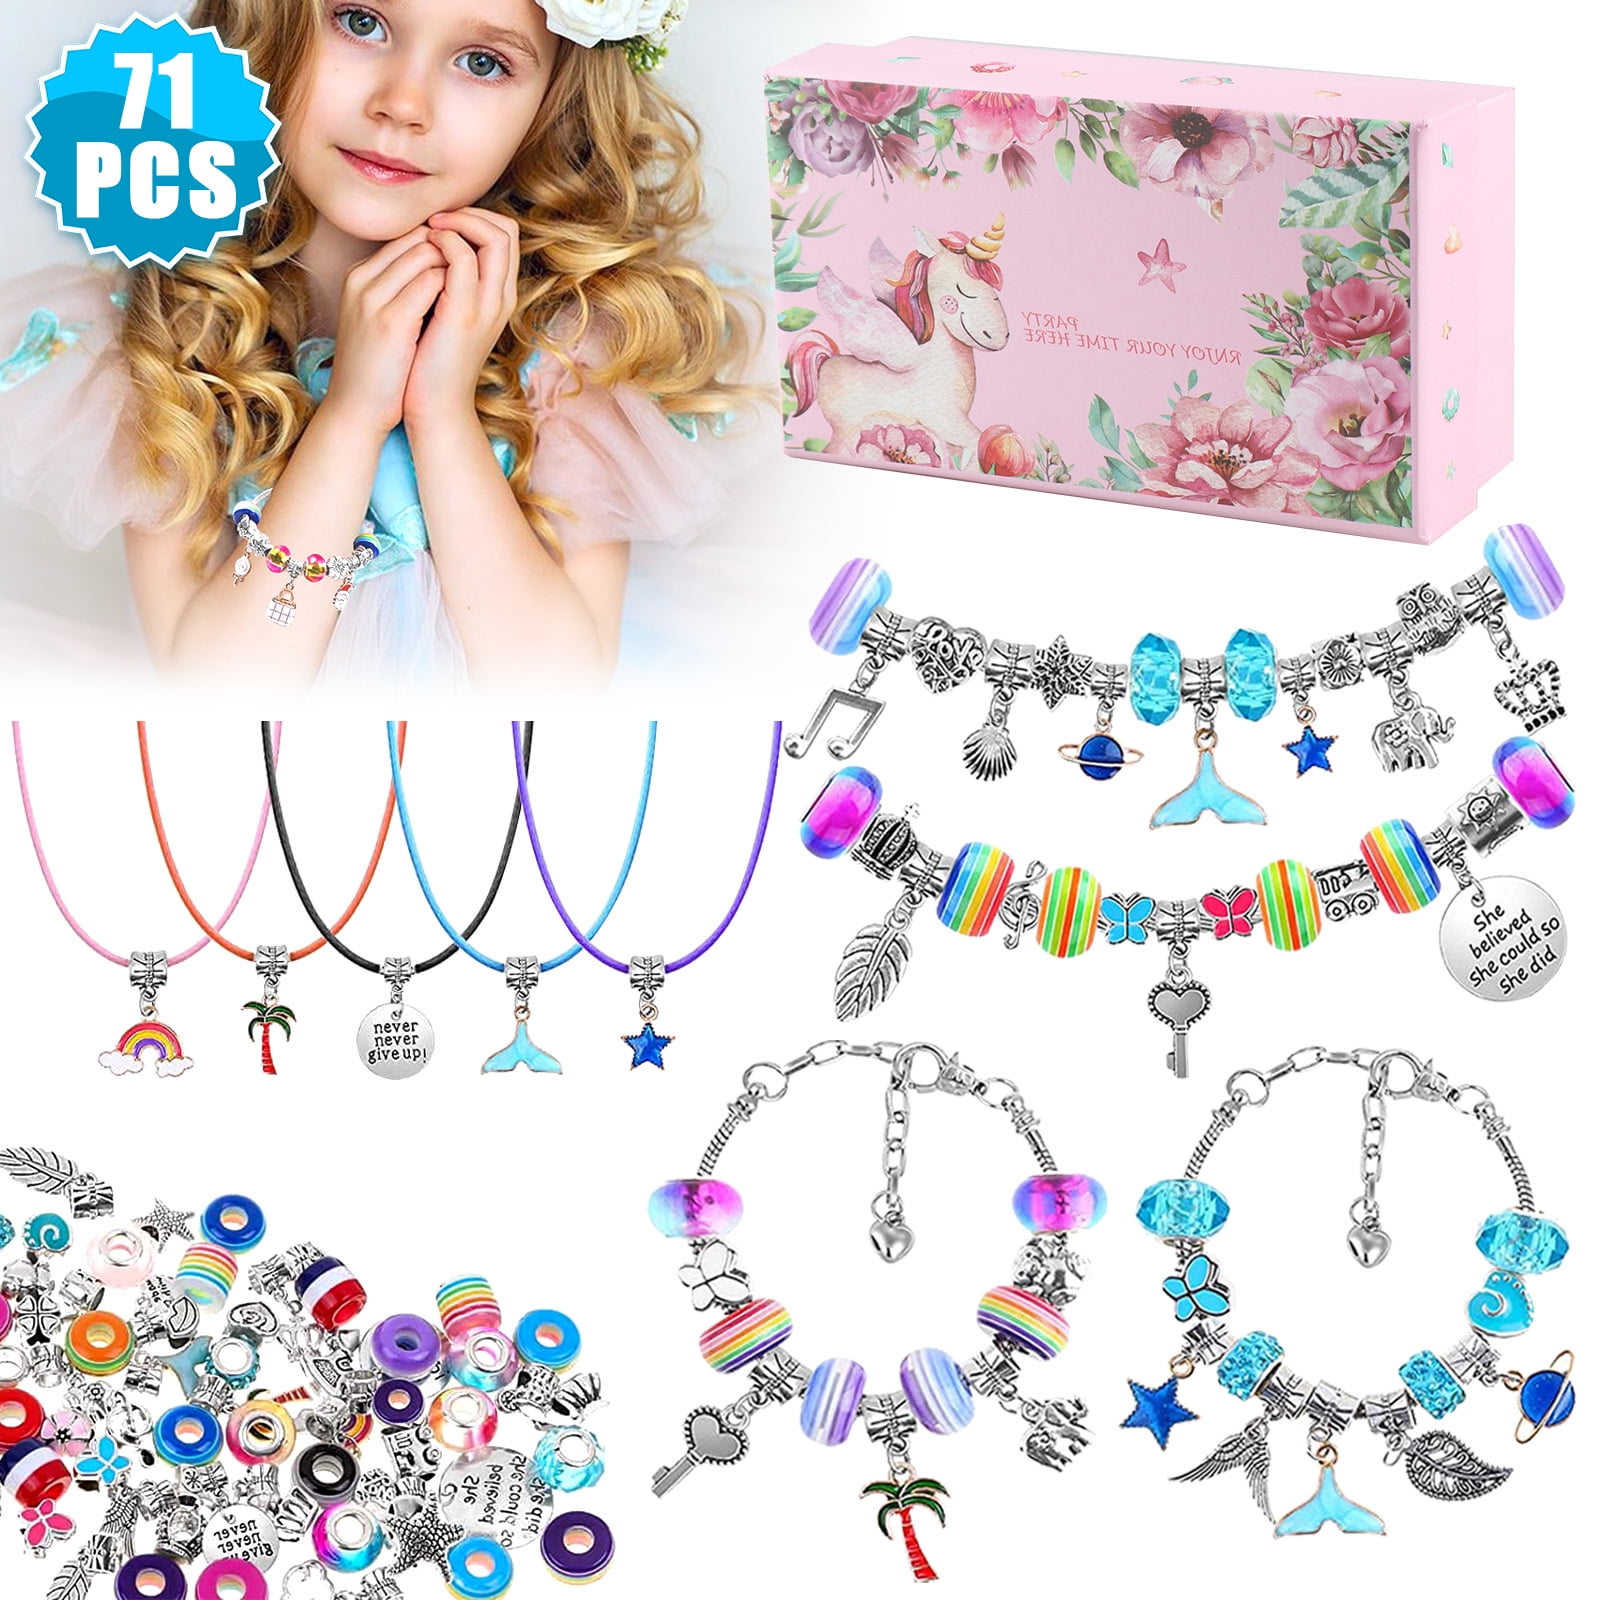 Pearoft Friendship Bracelet Kit for Girl Gift, Birthday Gifts for Girls Age  3-12 Kids Bracelets Bead Kit Craft Toy Gift for 3 4 5 6 7 8 9 10 11 12 Year